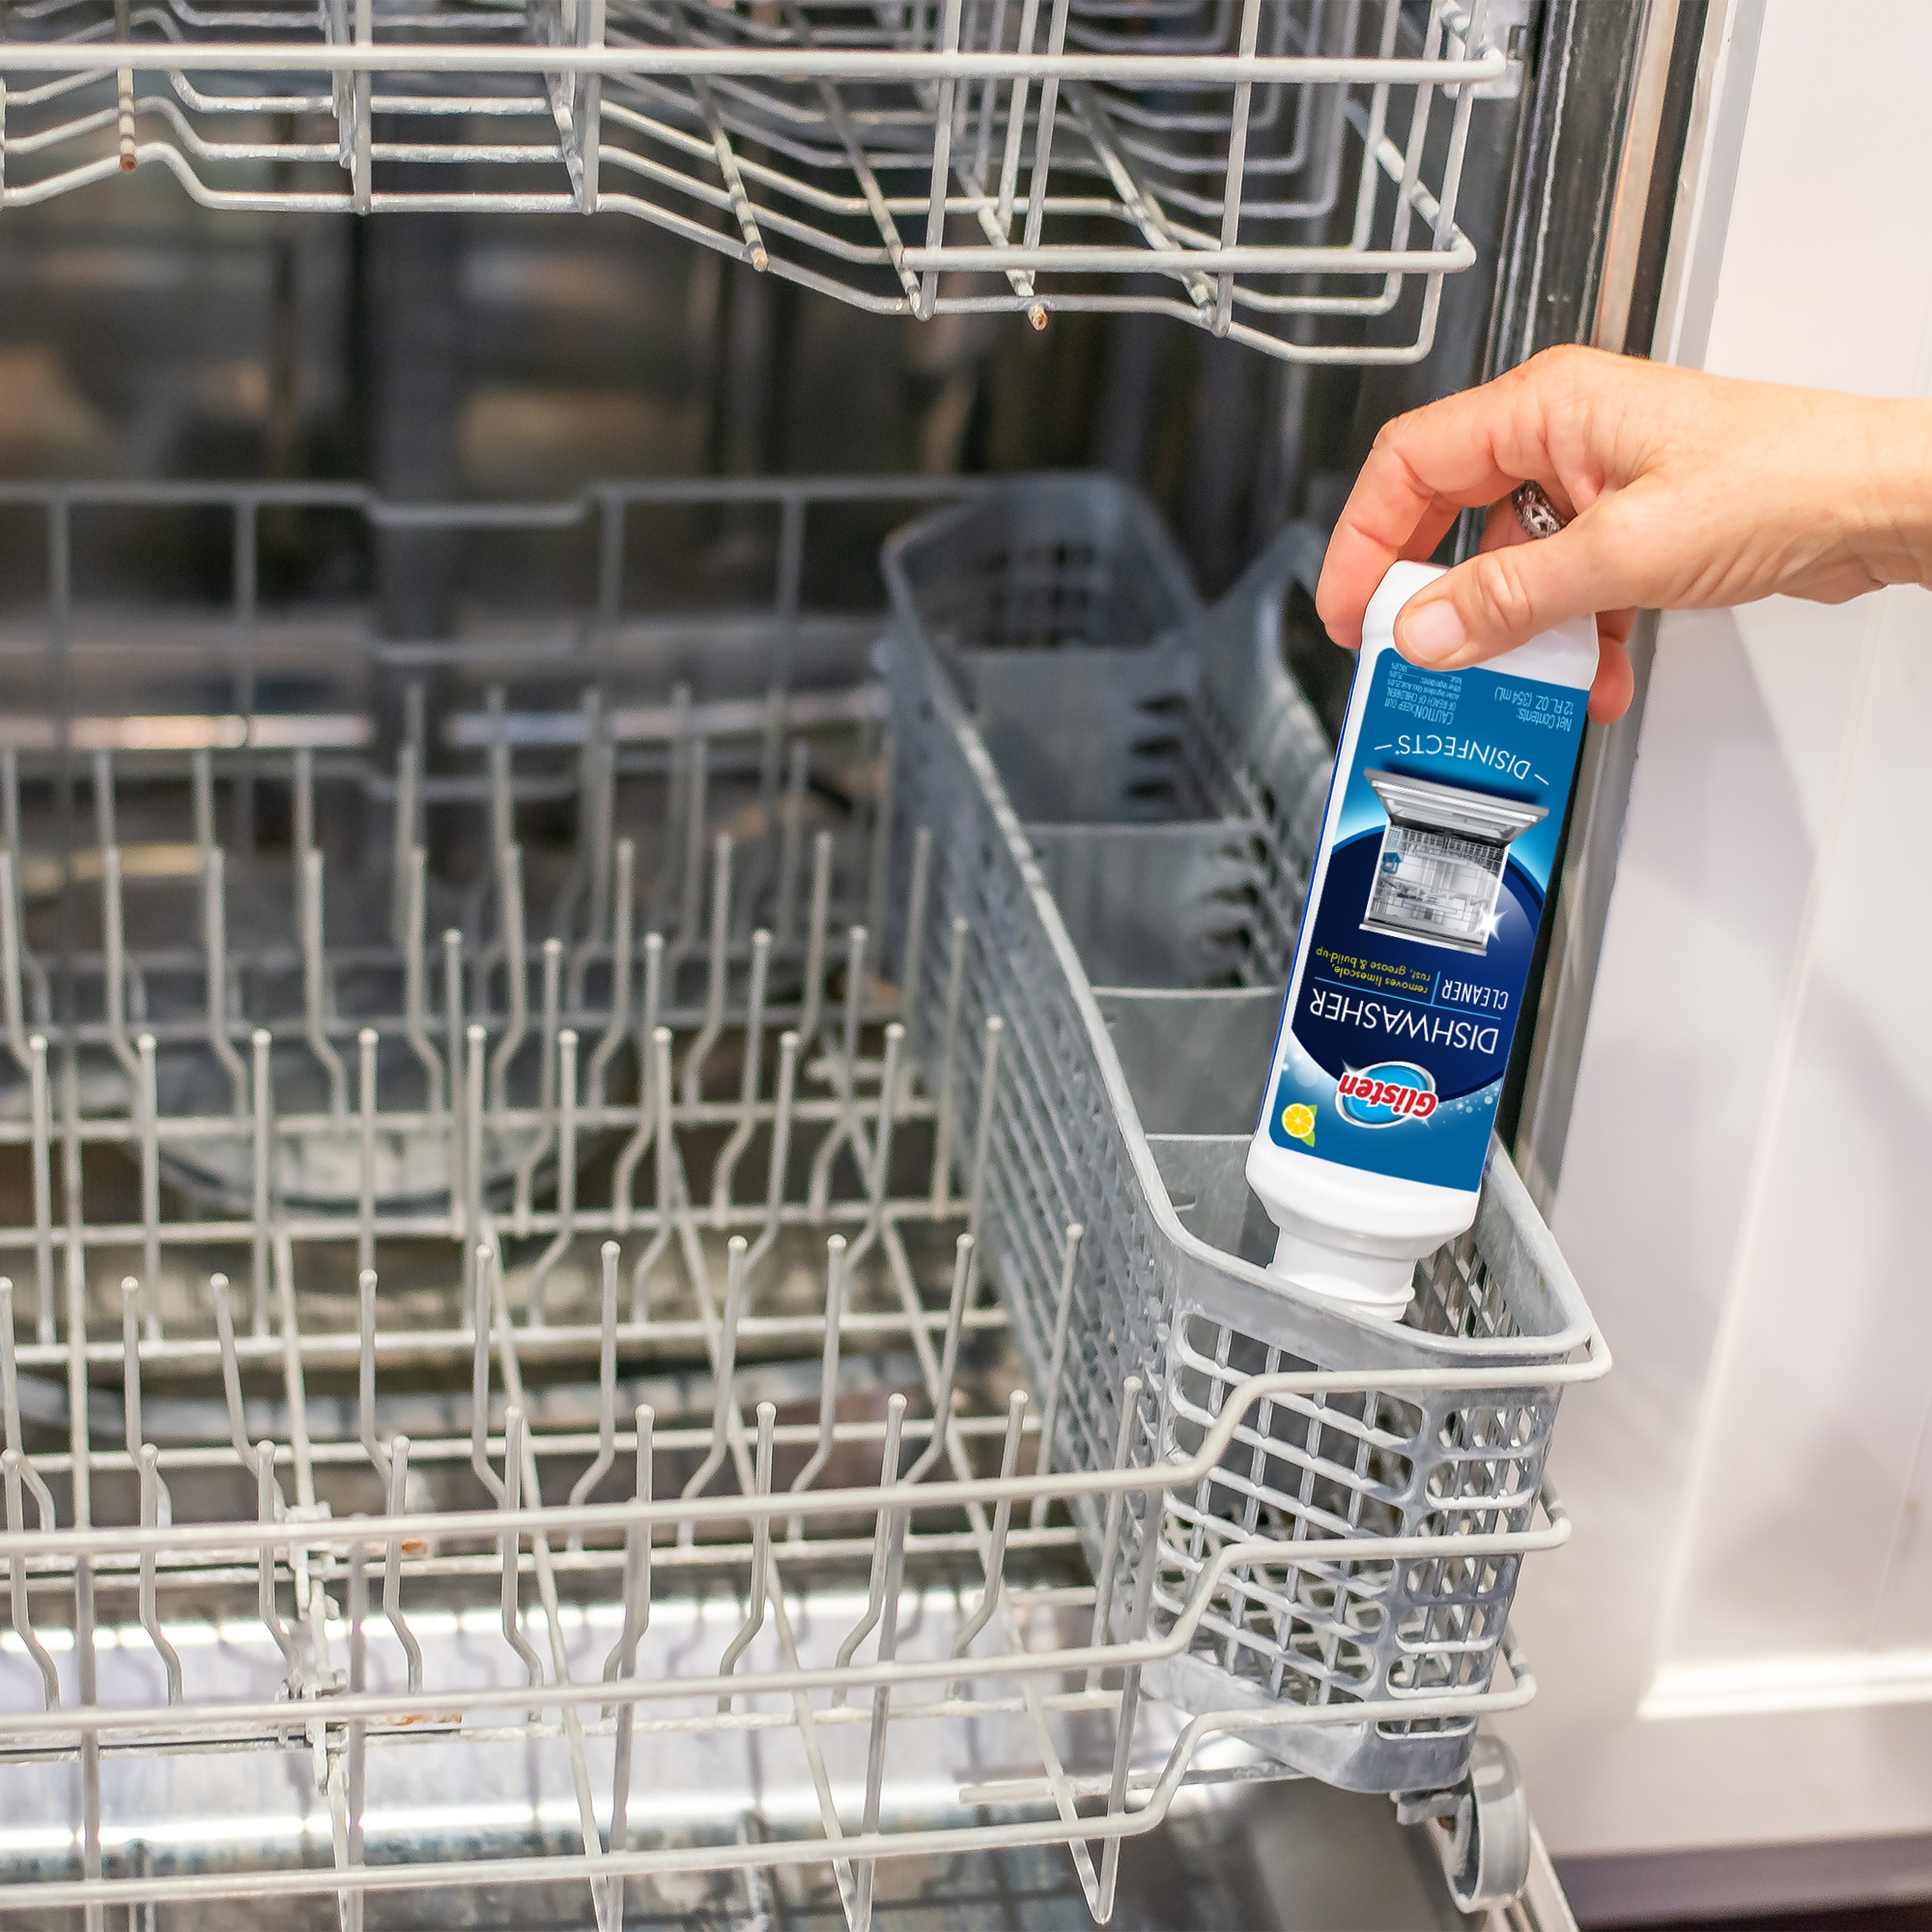 Glisten Dishwasher Cleaner - 12 fl oz